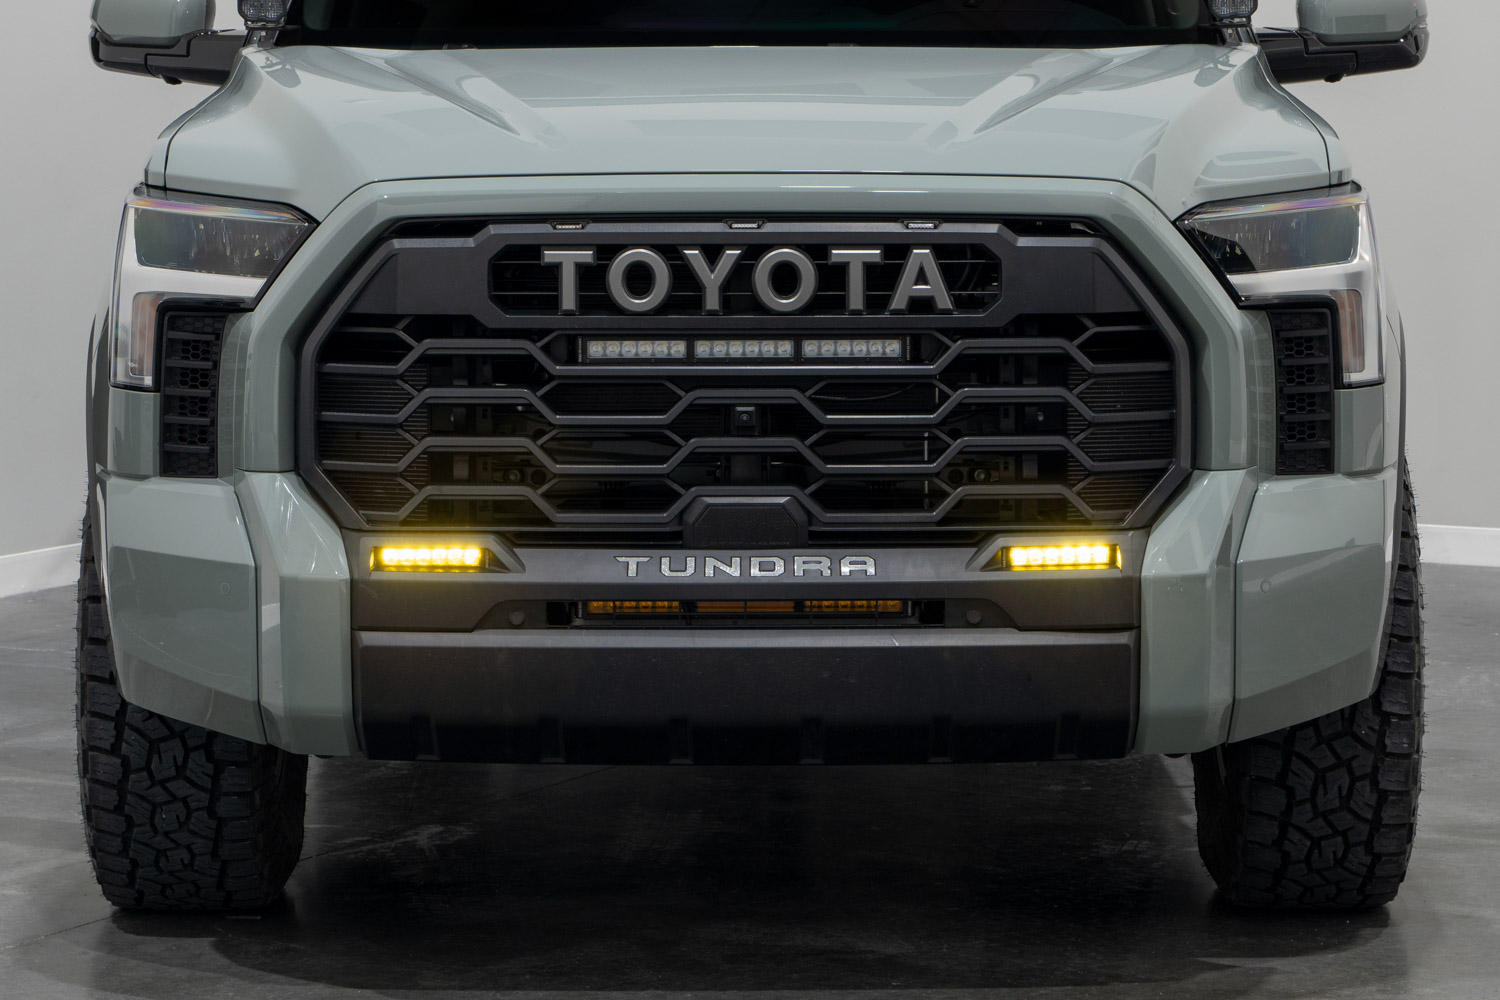 Stage Series LED light bar fog light kit on Toyota Tundra